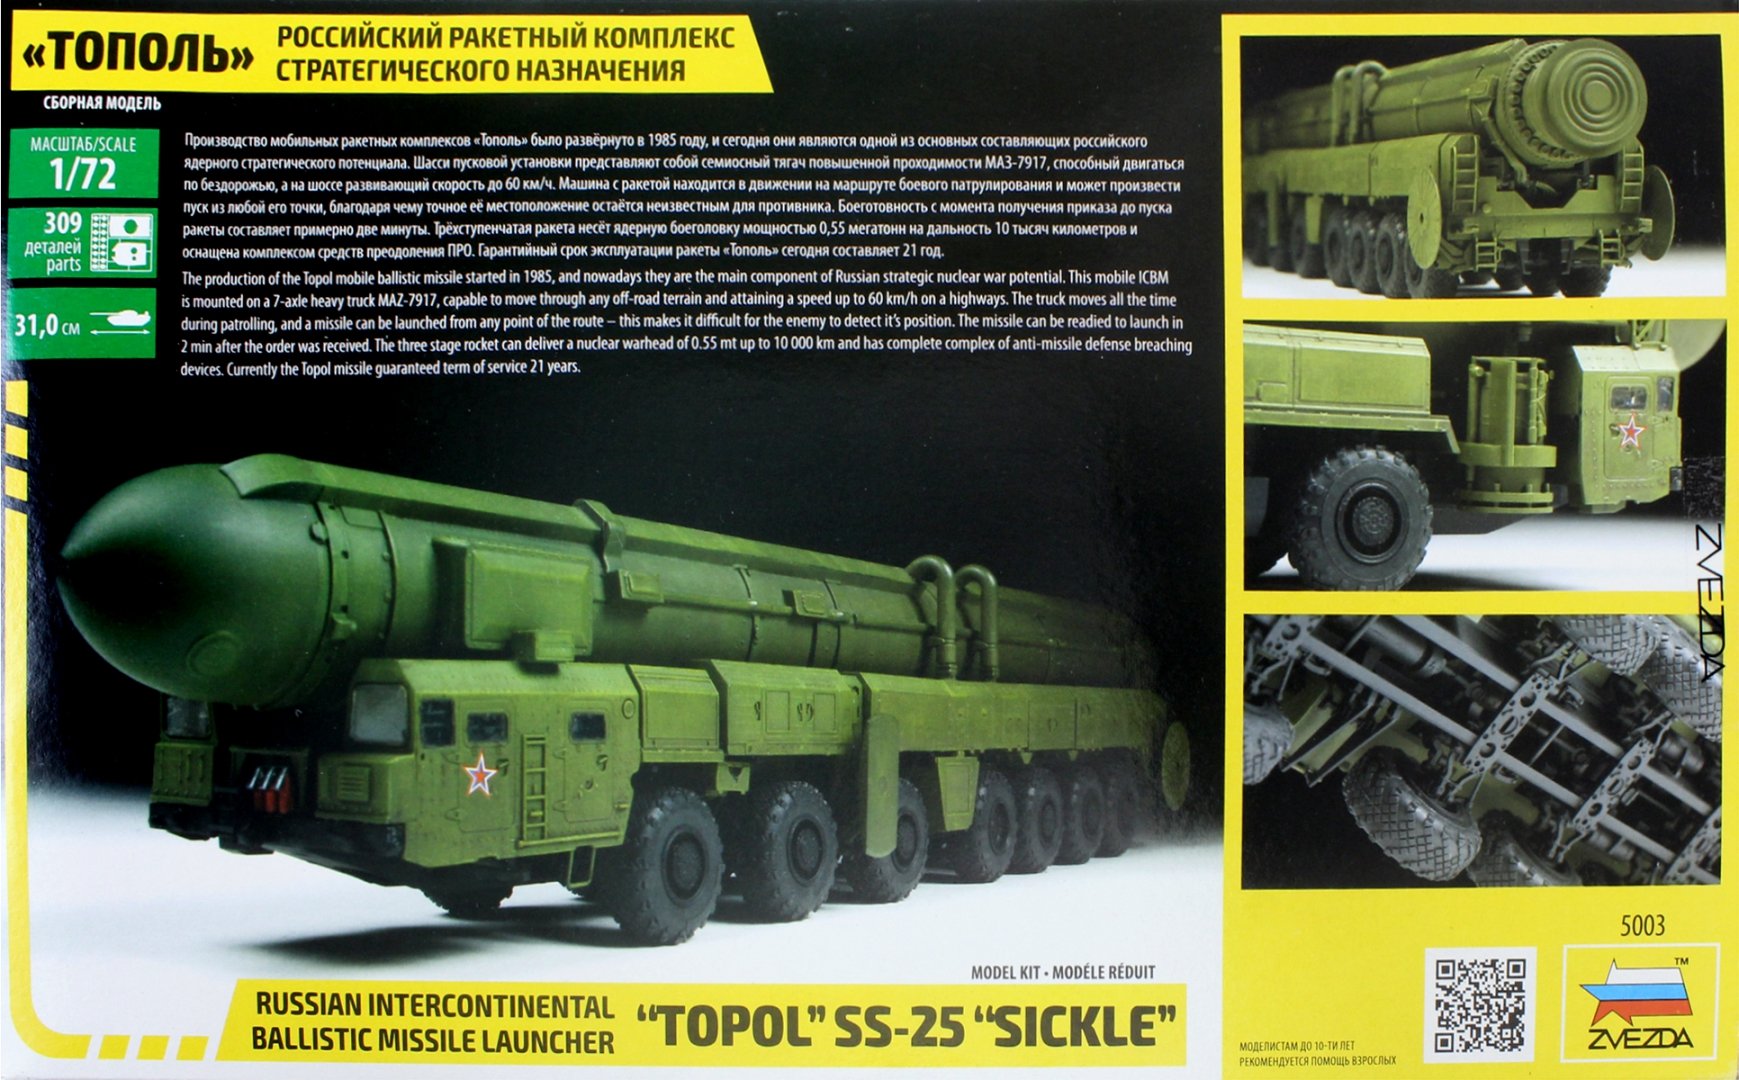 Иллюстрация 1 из 5 для Российский ракетный комплекс стратегического назначения "Тополь" (5003) | Лабиринт - игрушки. Источник: Лабиринт